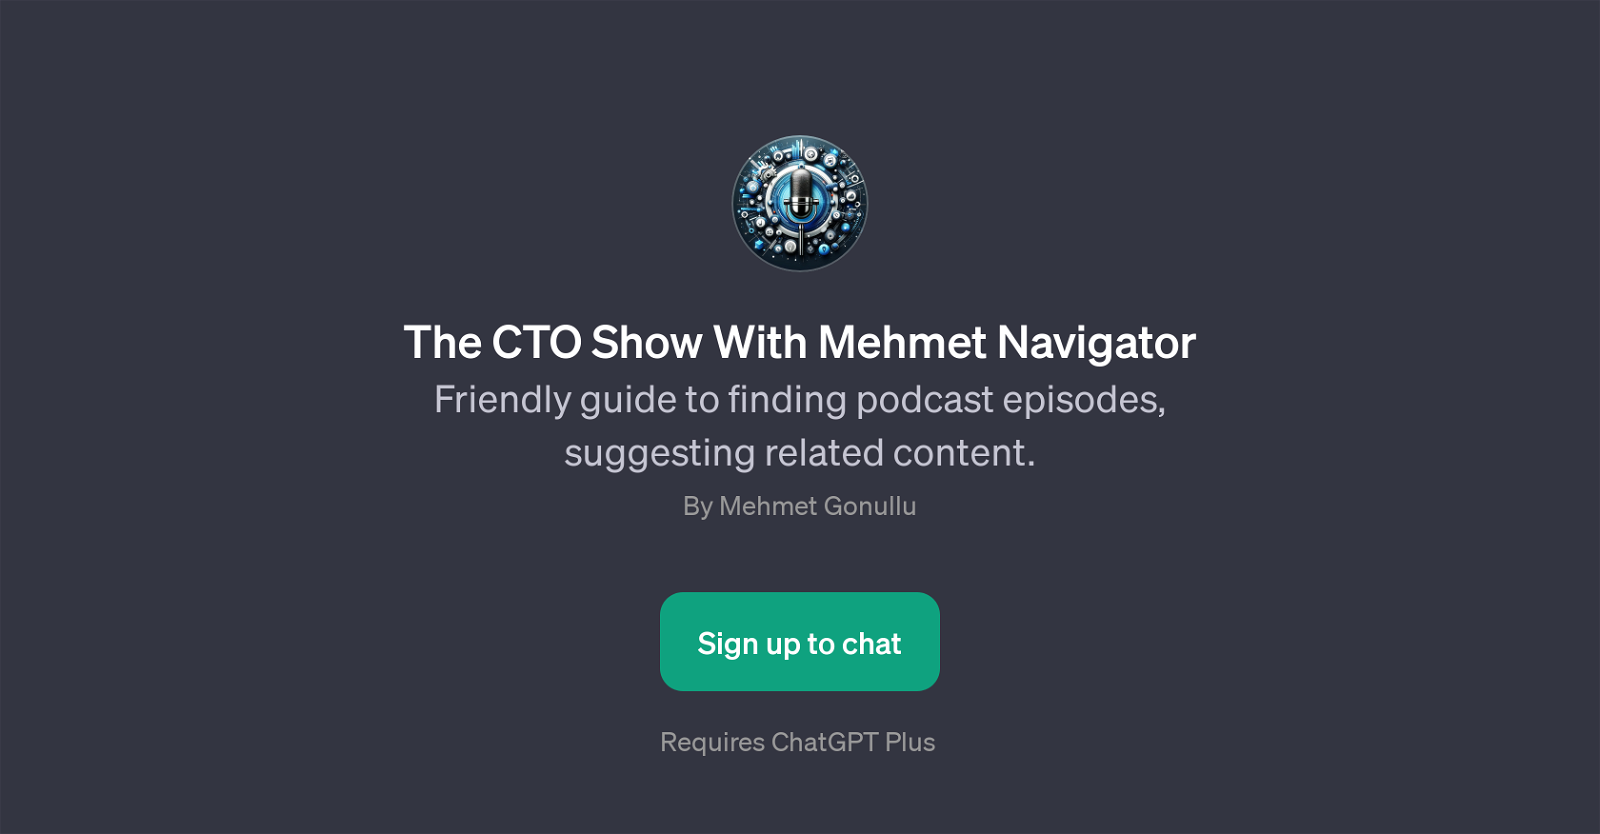 The CTO Show With Mehmet Navigator website